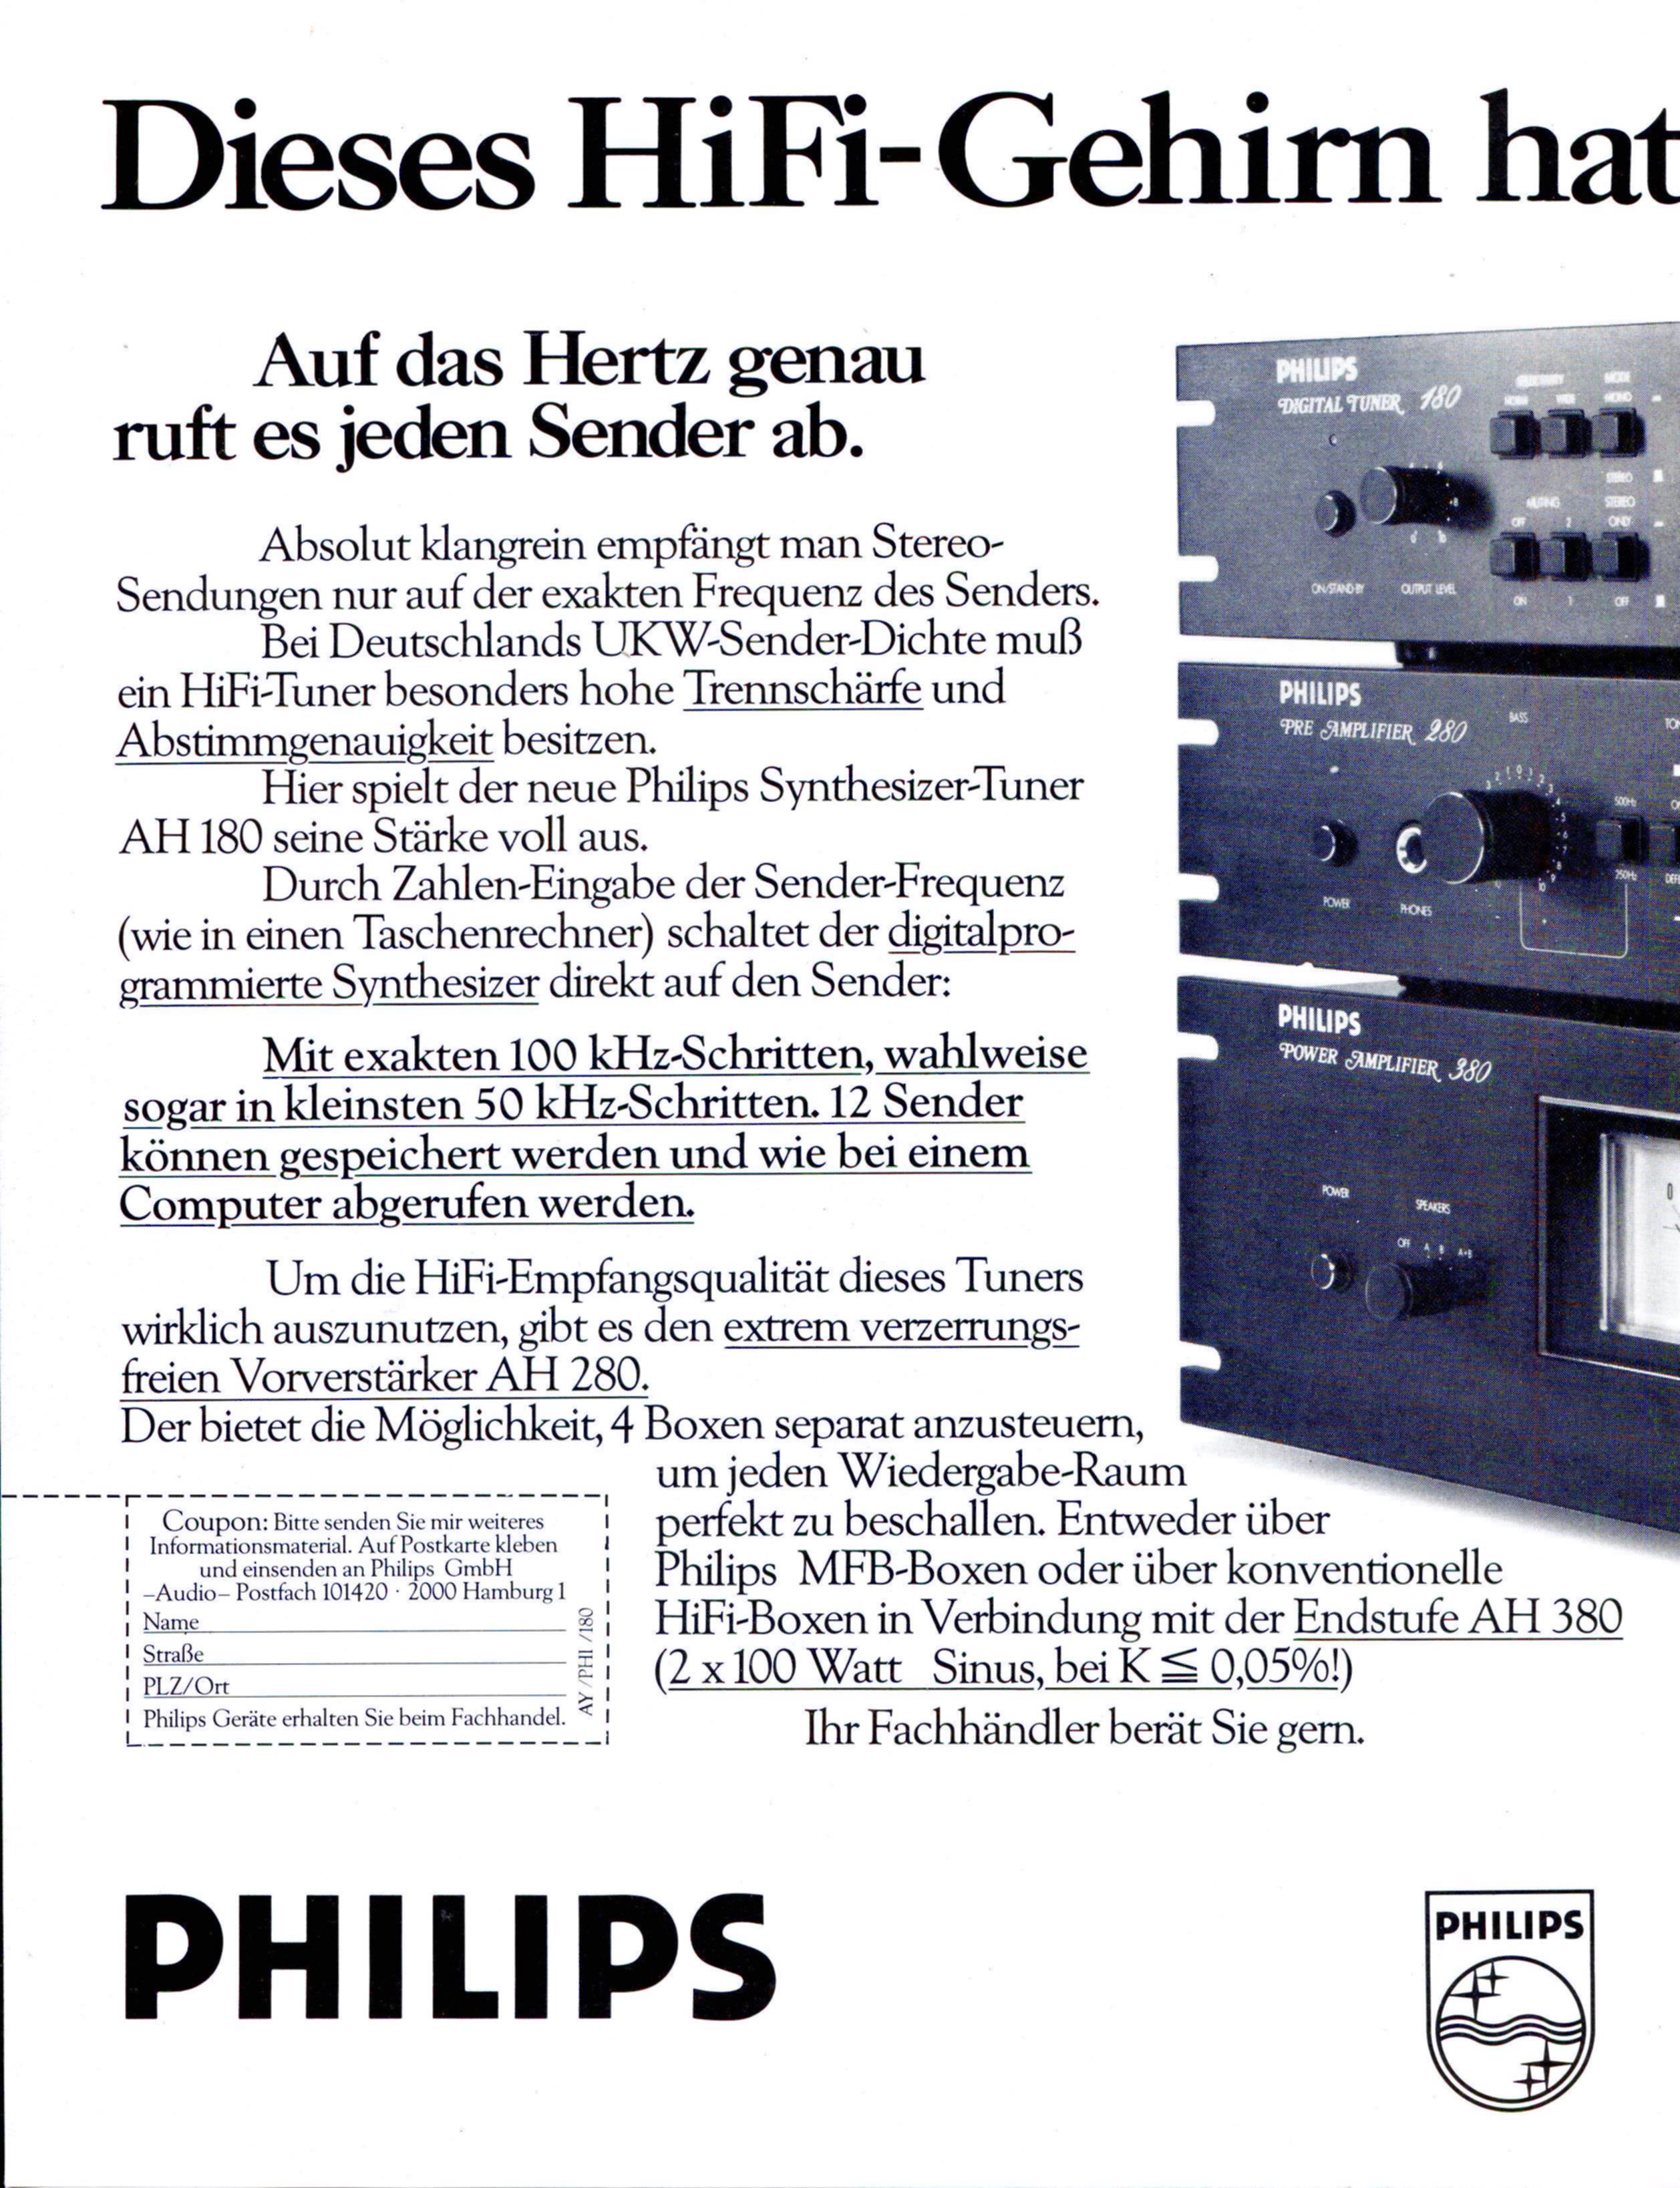 Philips 1980 147.jpg